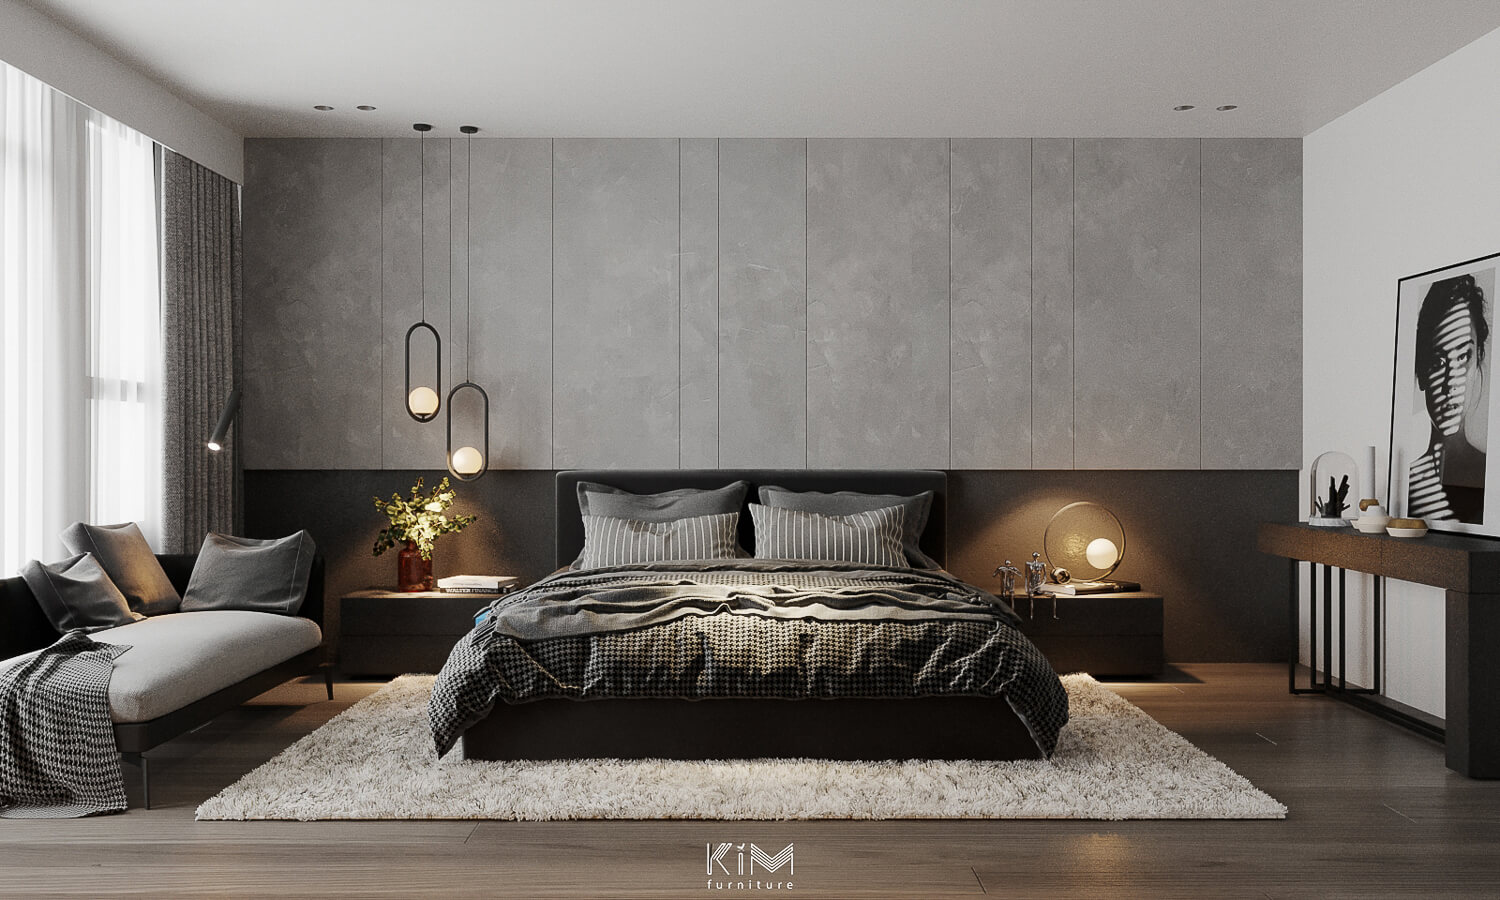 Thiết kế phòng ngủ màu xám với tường sơn hiệu ứng giả bê tông